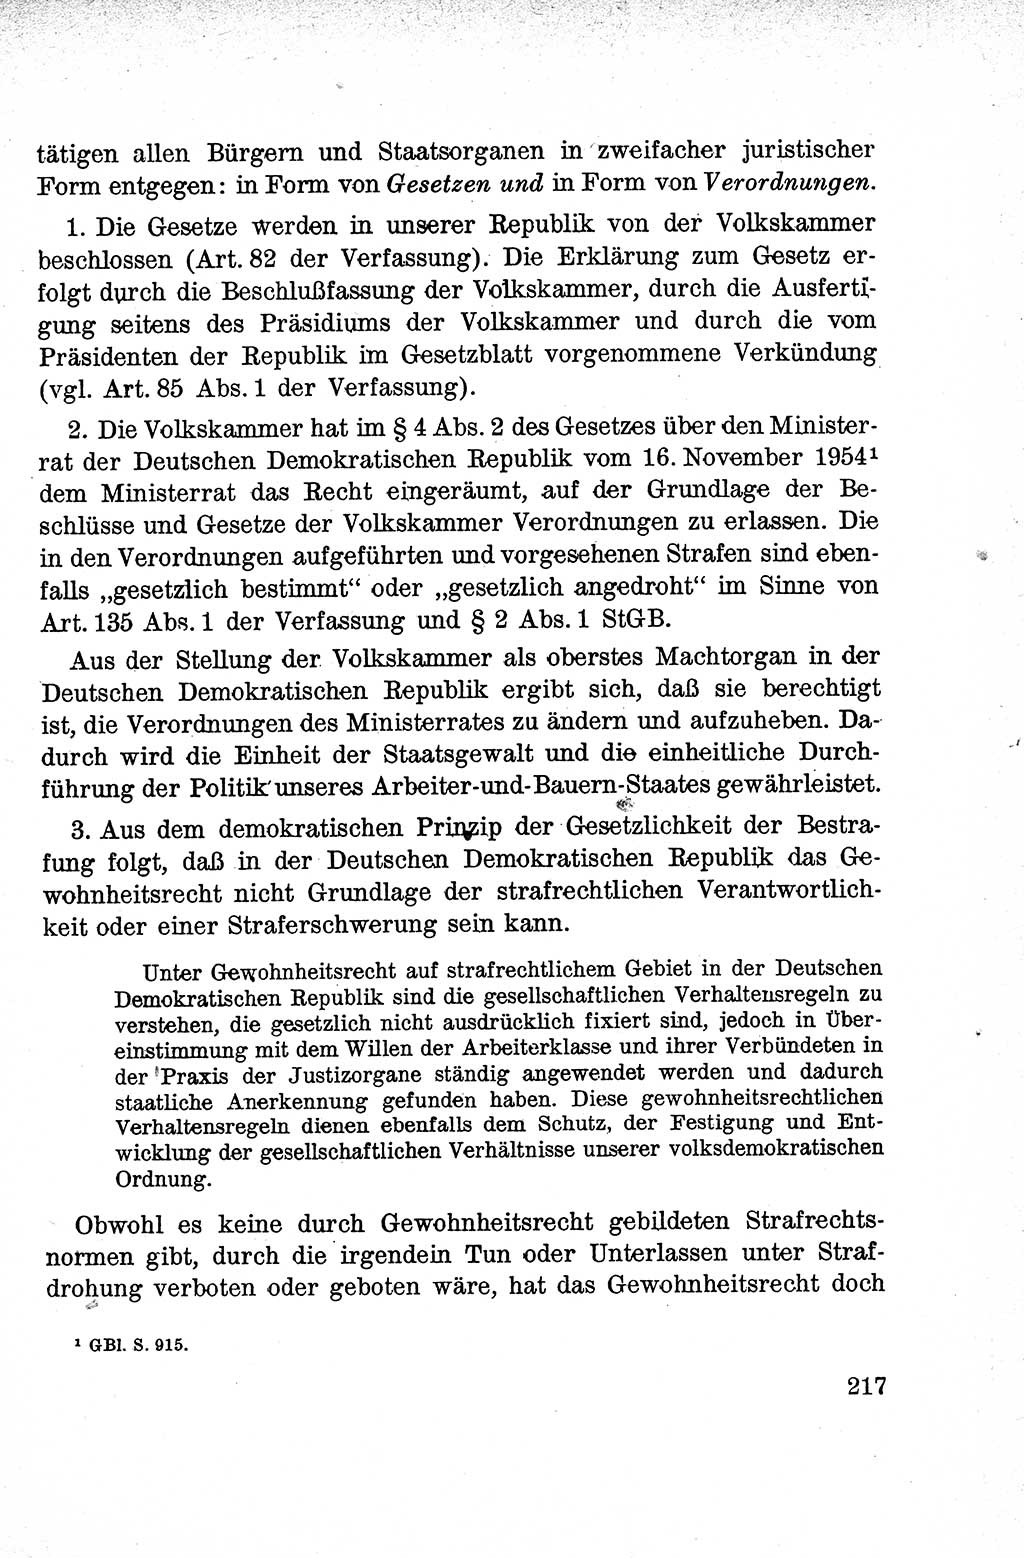 Lehrbuch des Strafrechts der Deutschen Demokratischen Republik (DDR), Allgemeiner Teil 1959, Seite 217 (Lb. Strafr. DDR AT 1959, S. 217)